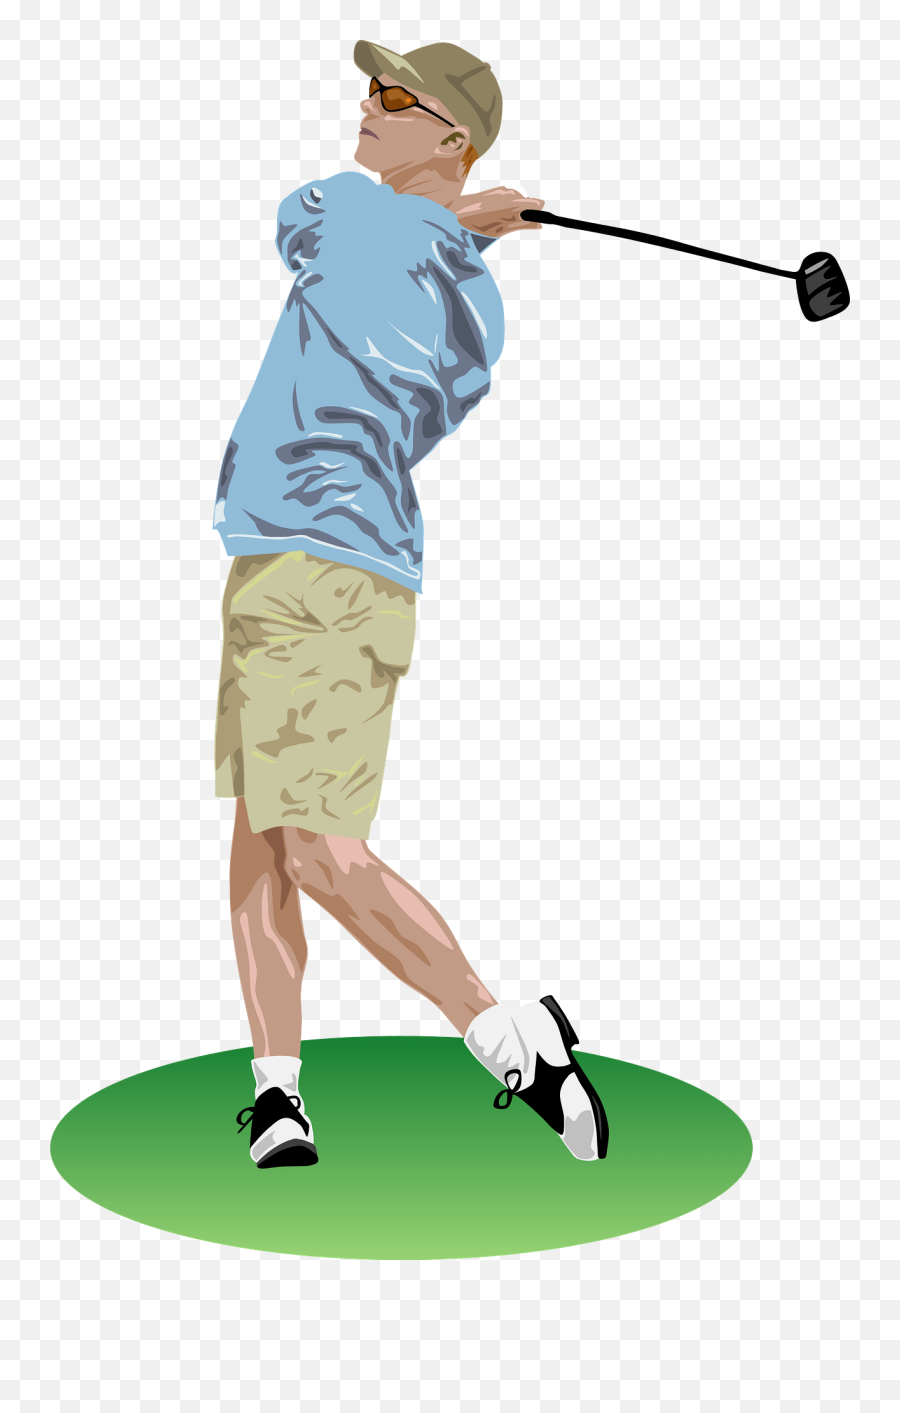 Golf Club Free Golf Clipart And - Golf Player Clip Art Emoji,Golf Emoji